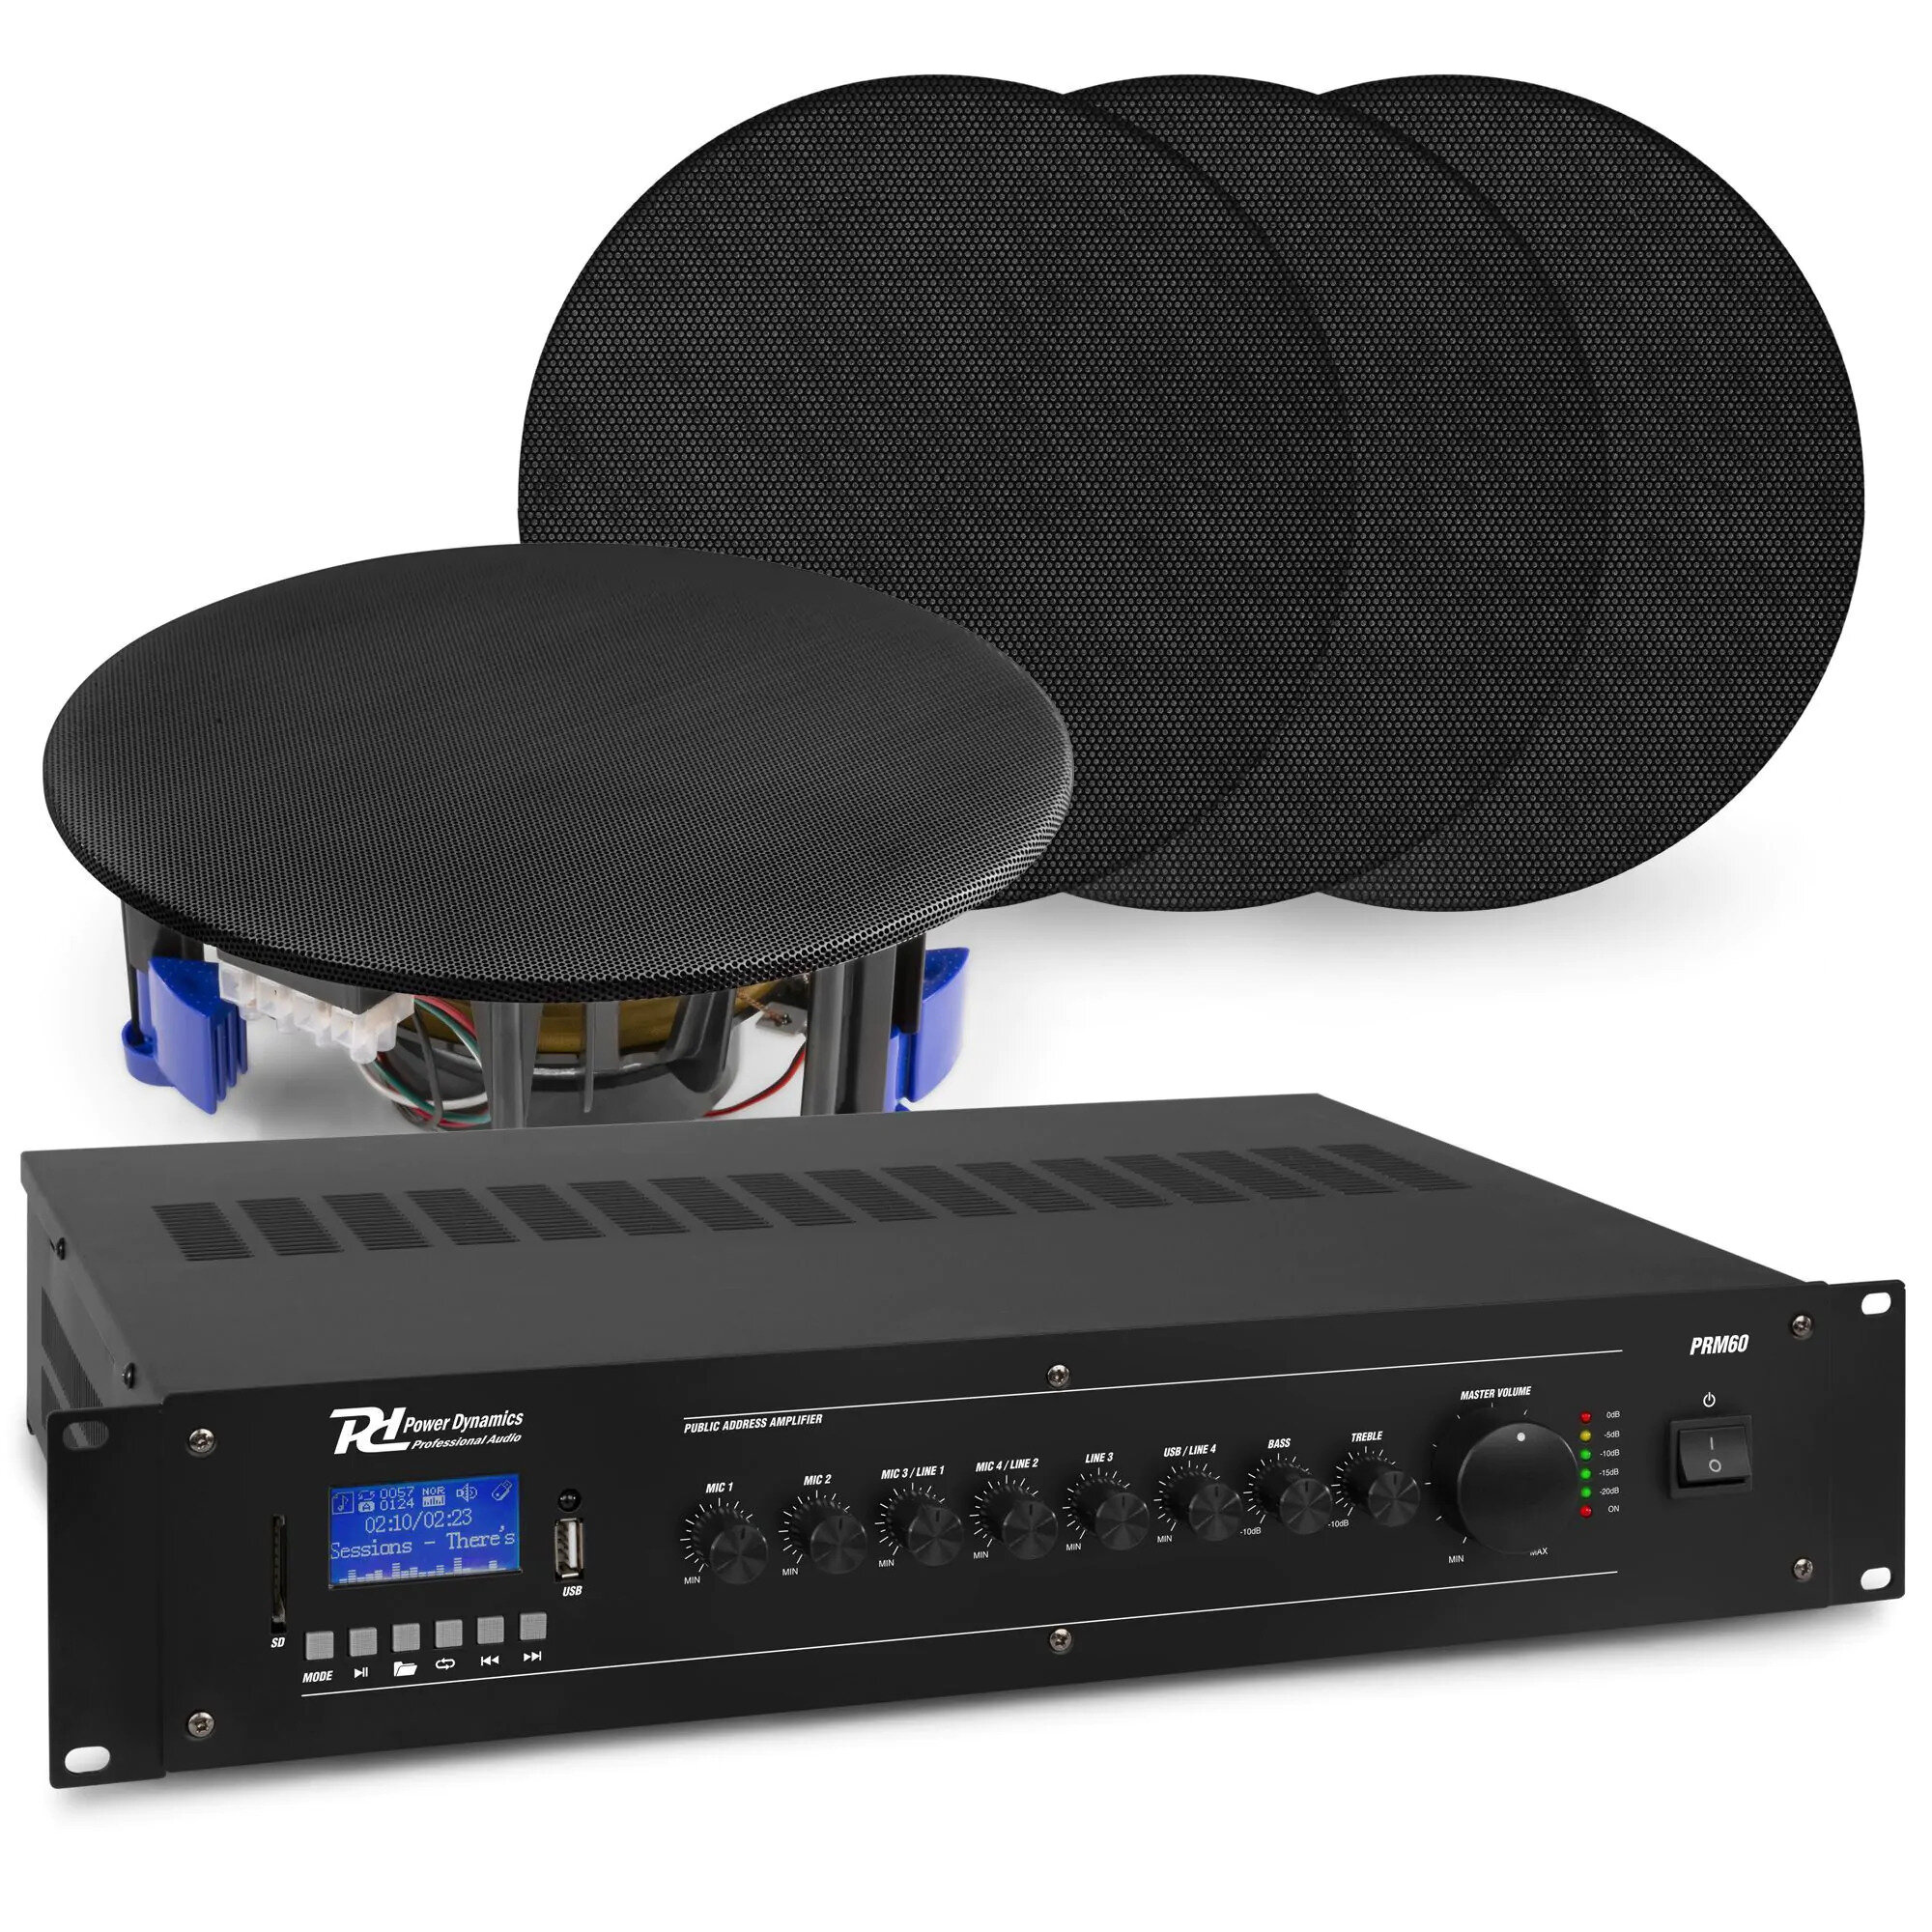 Power Dynamics Ljudsystem med 4x NCSP5B inbyggd högtalare och PRM60 förstärkare med Bluetooth